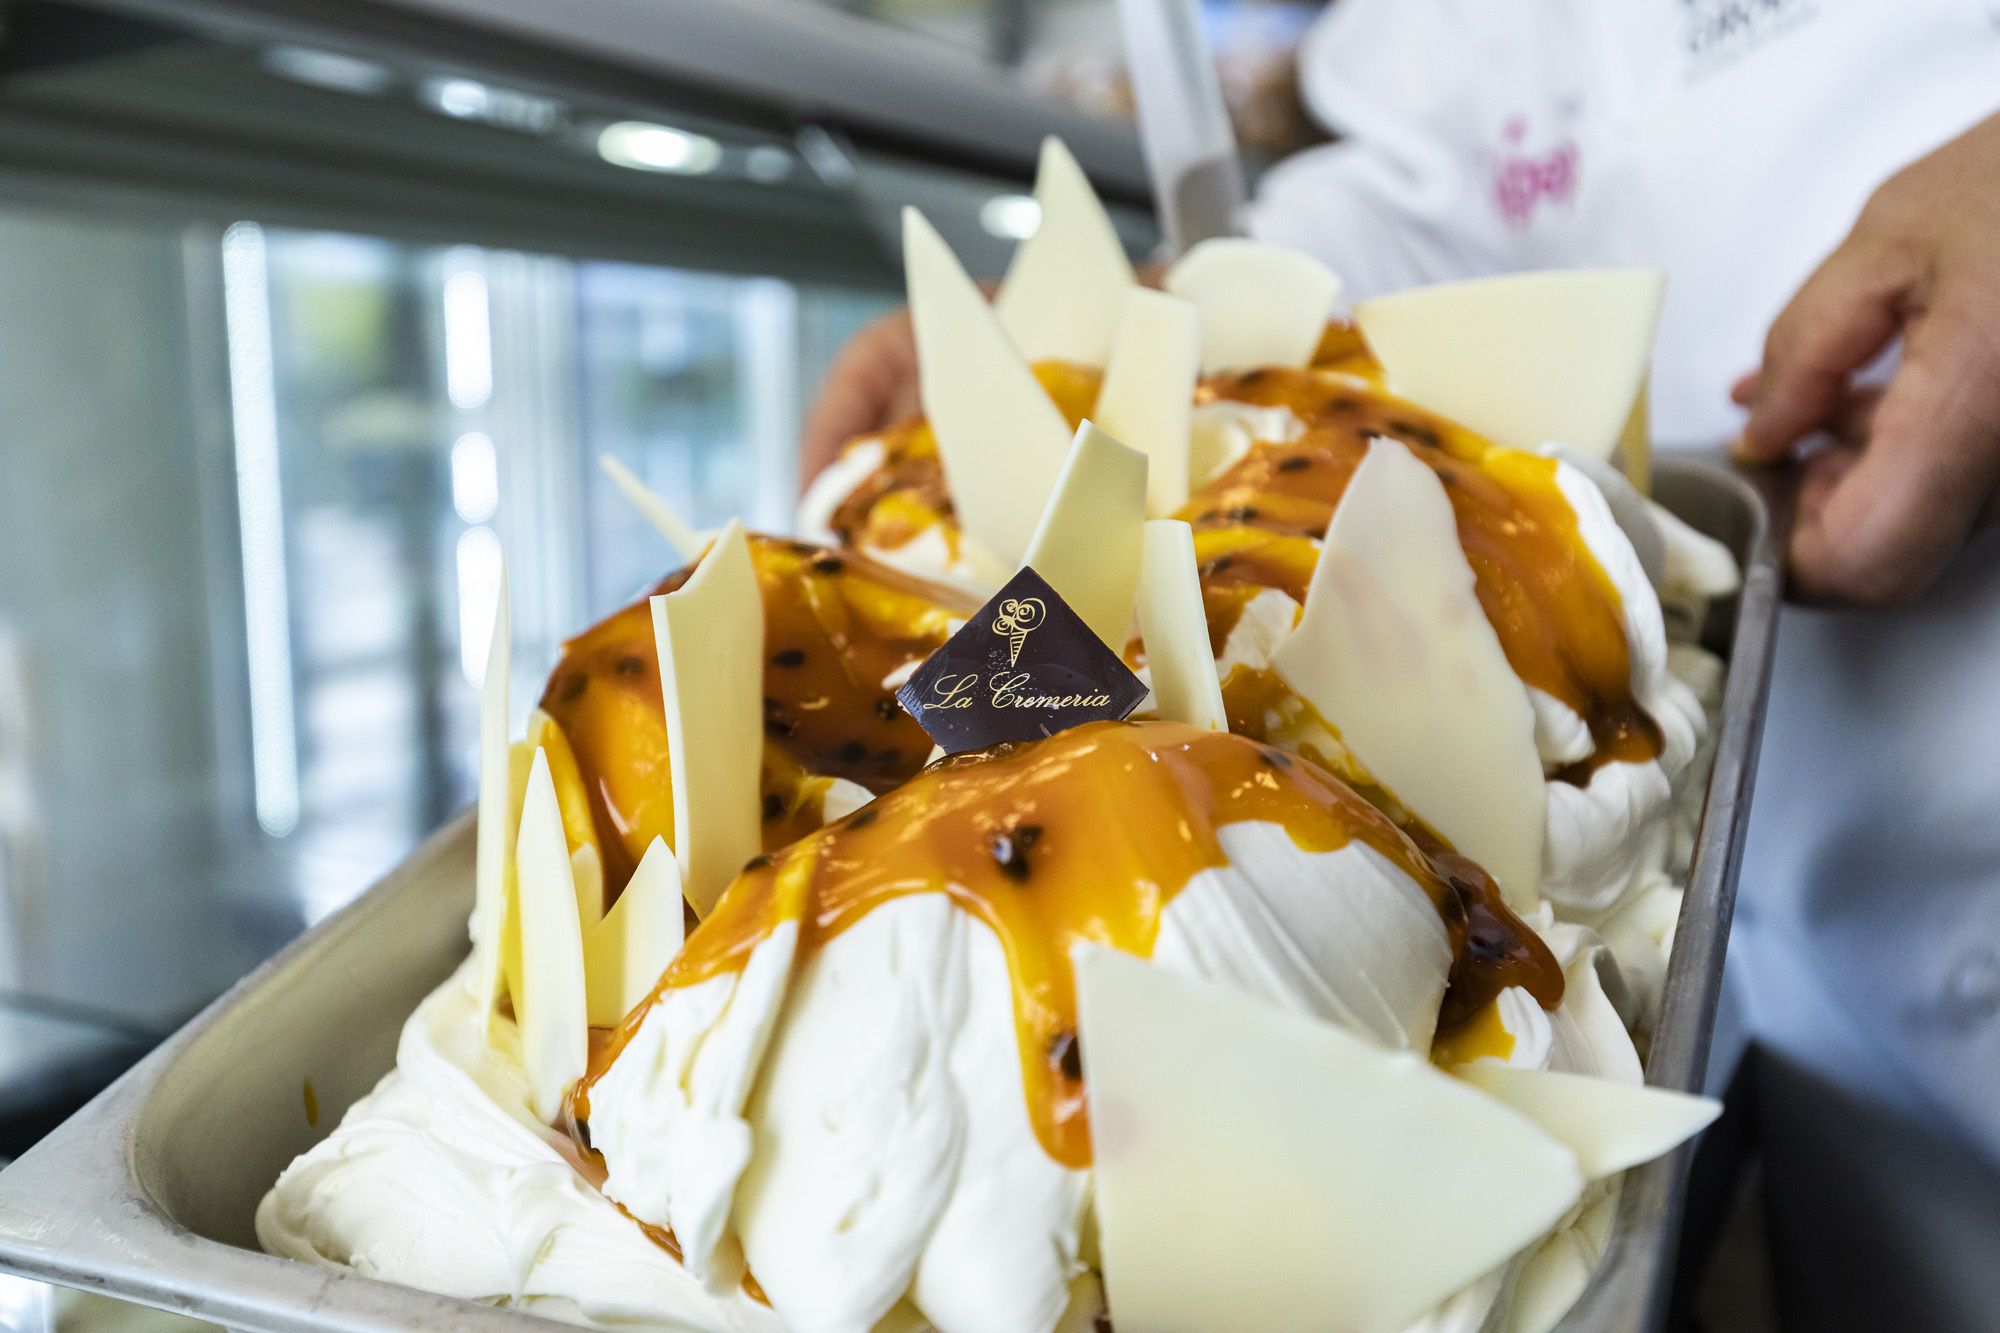 Uno de los helados artesanales de La Cremería, una de las mejores heladerías de Cádiz.